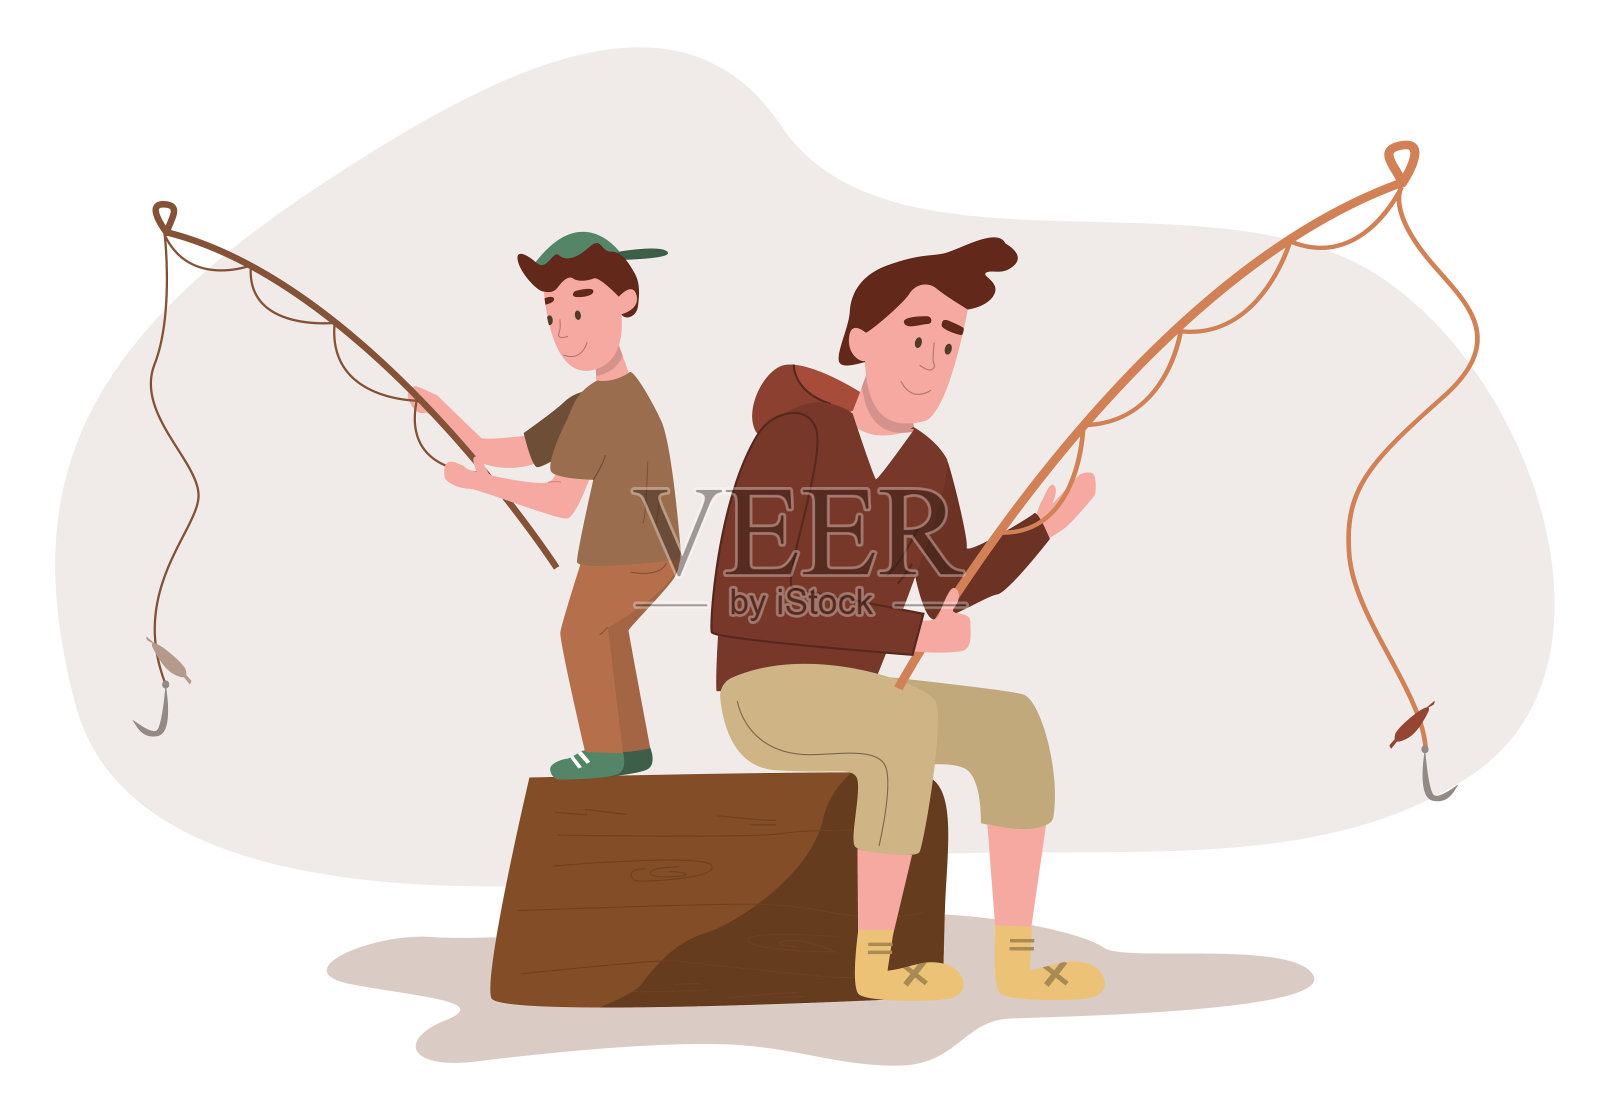 父子俩坐着钓鱼竿。平面设计说明。向量插画图片素材